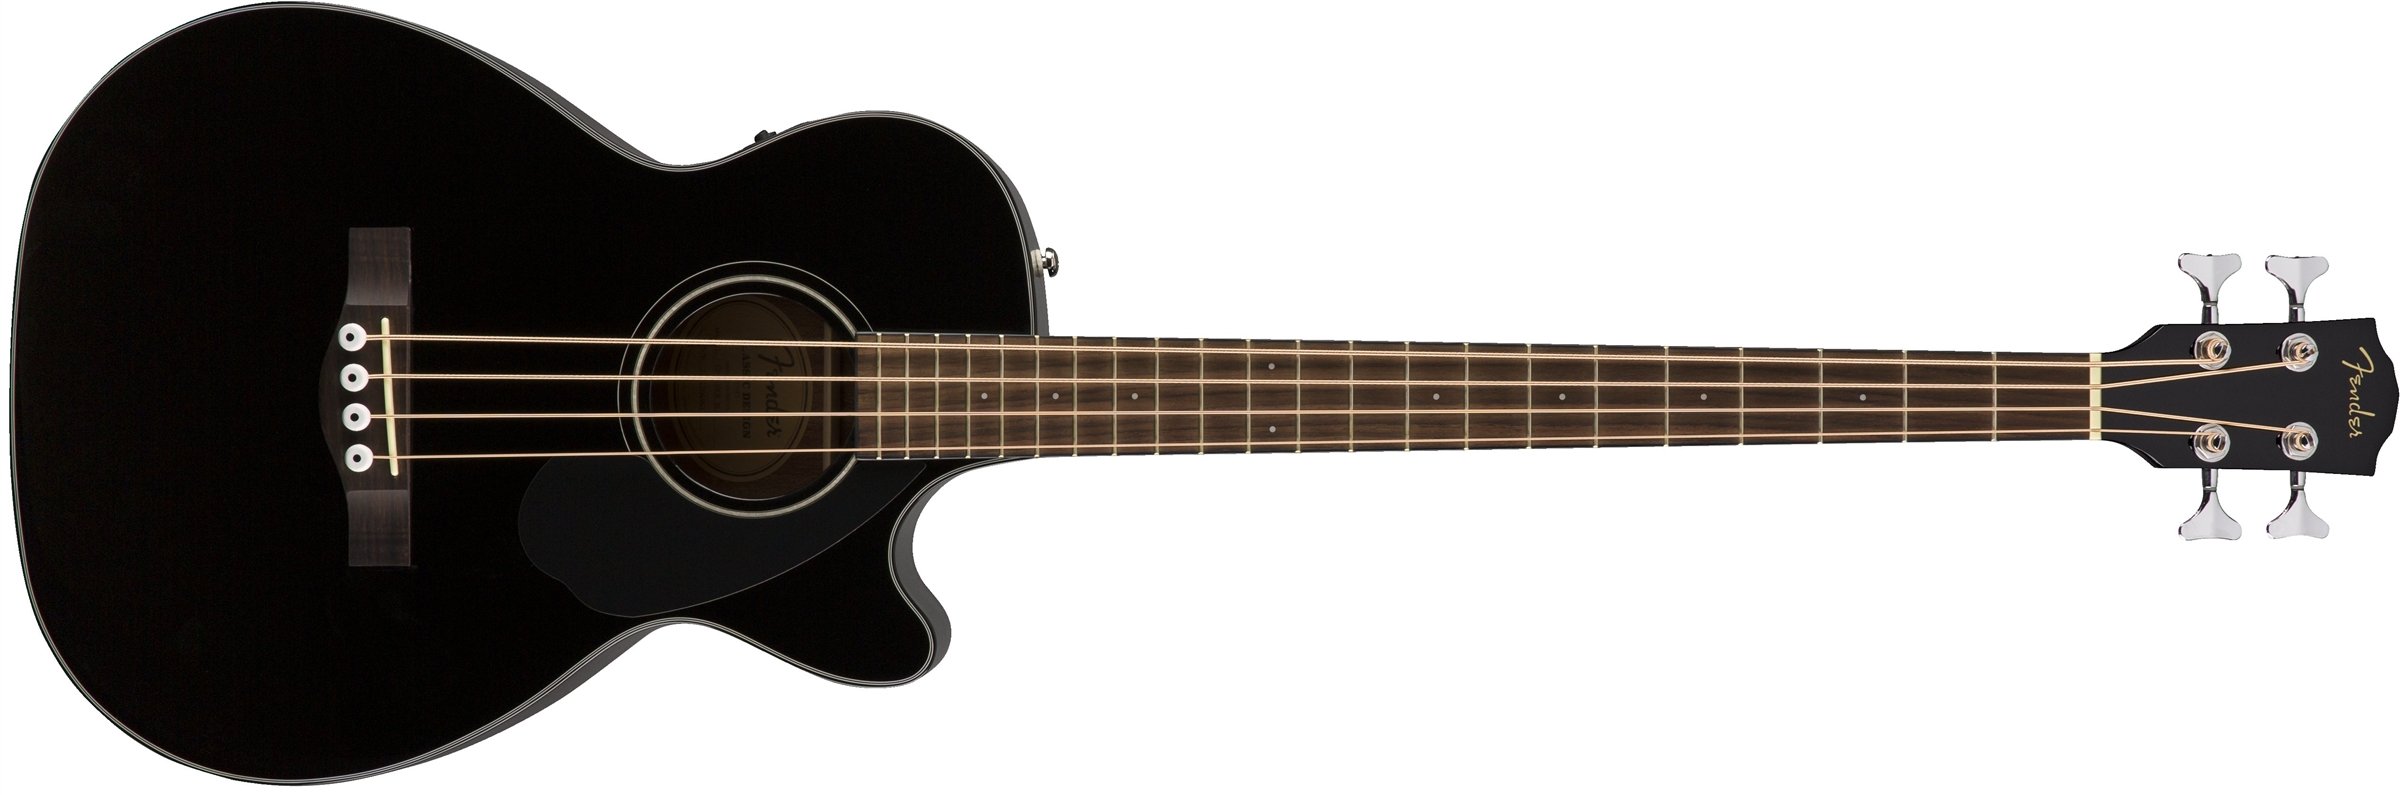 Fender सीबी-60एससीई ध्वनिक बास गिटार - काला